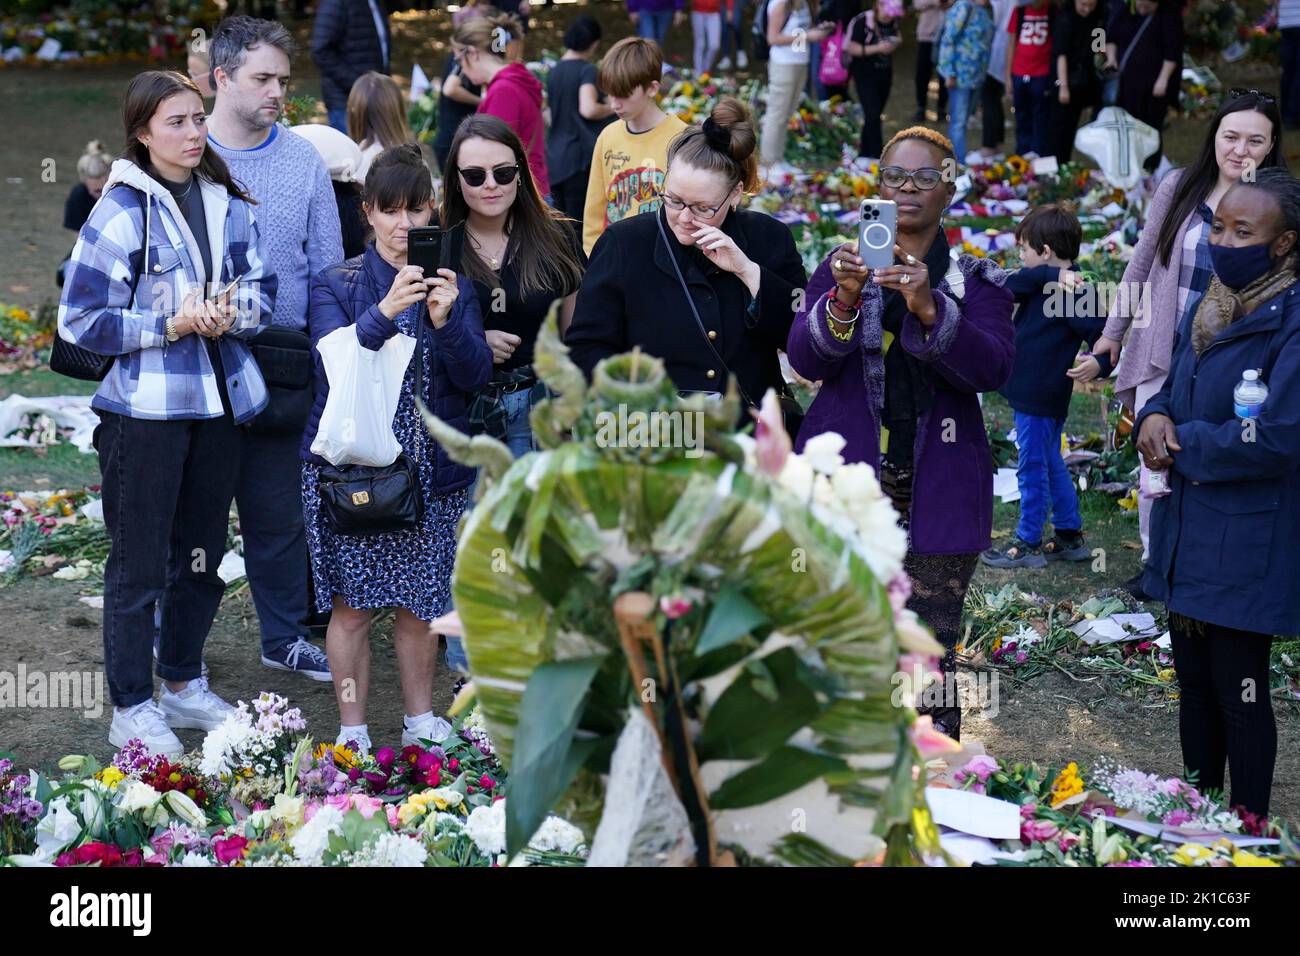 Los miembros del público ven flores y homenajes a la Reina Isabel II en Green Park en Londres, antes de su funeral el lunes. Fecha de la foto: Sábado 17 de septiembre de 2022. Foto de stock